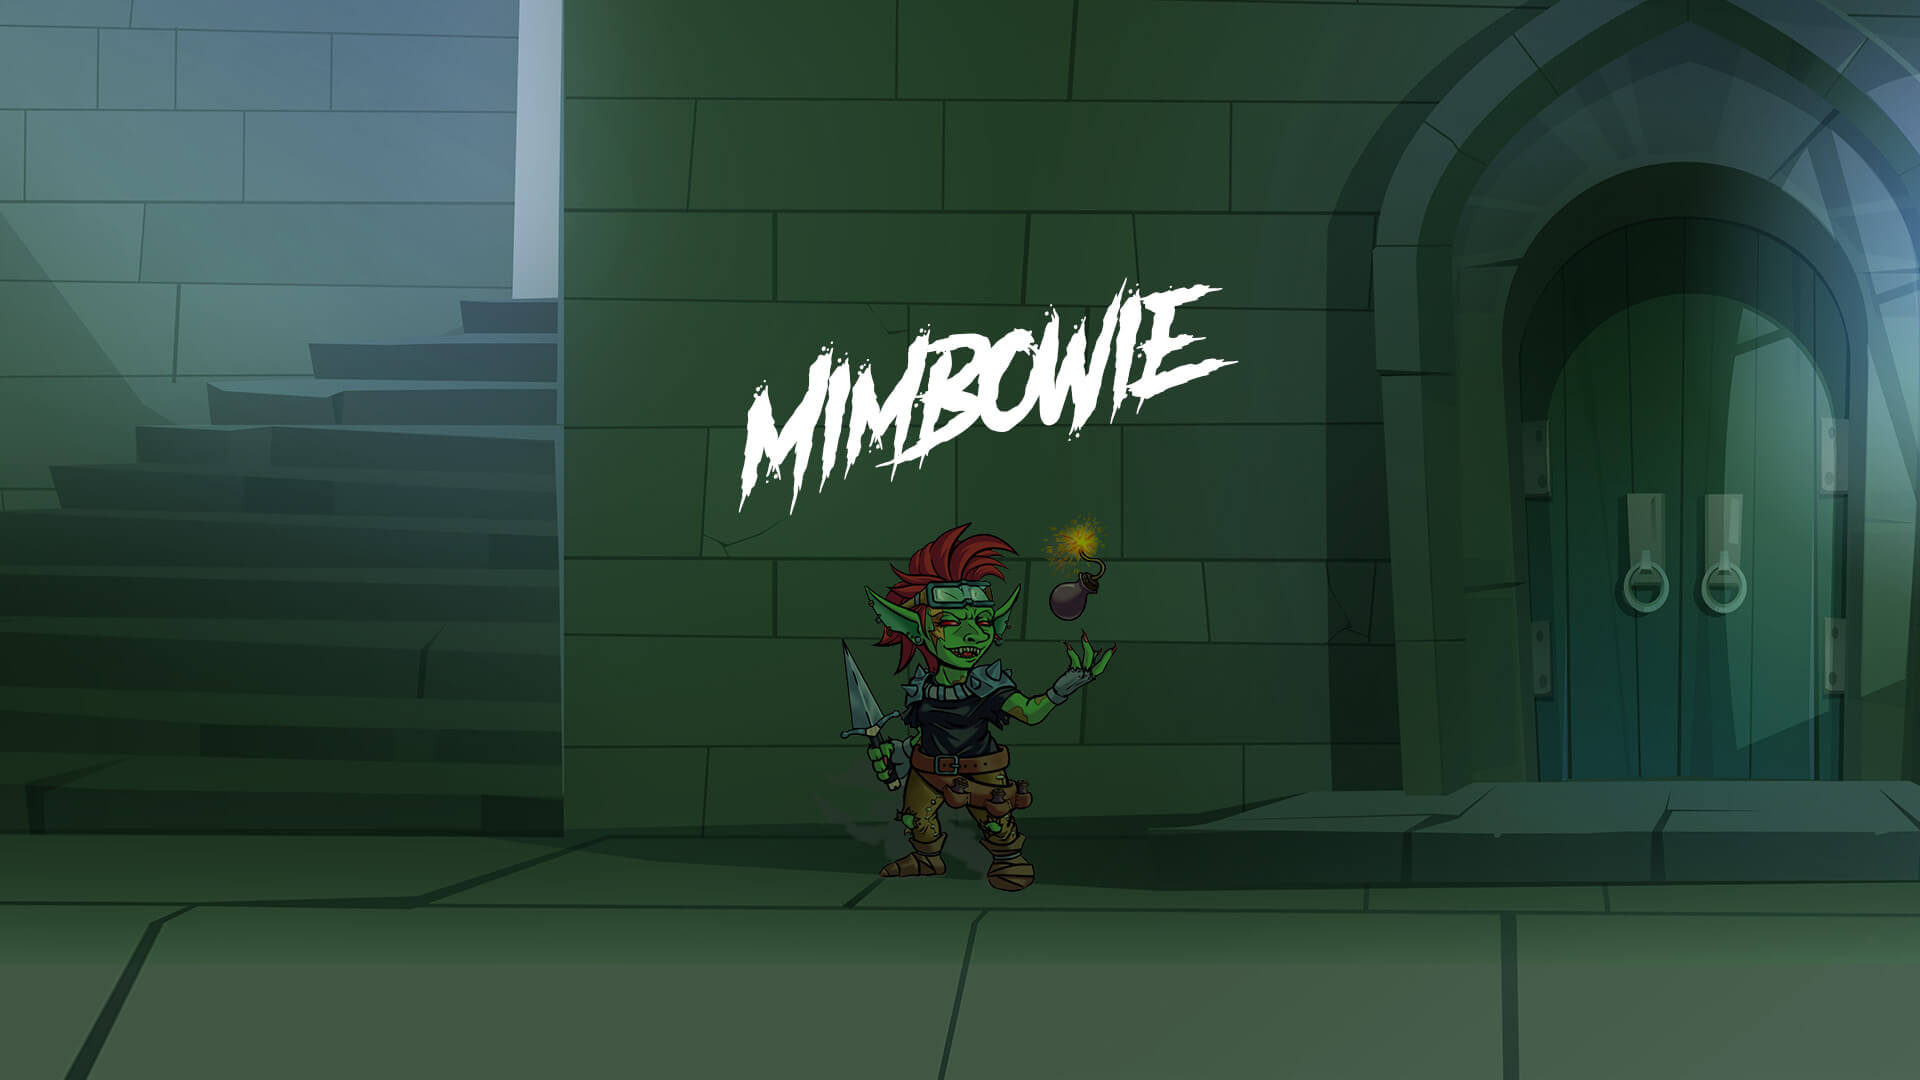 MimBowie – Nois eh Bowie! – Pathfinder 2 RPG – NPCS